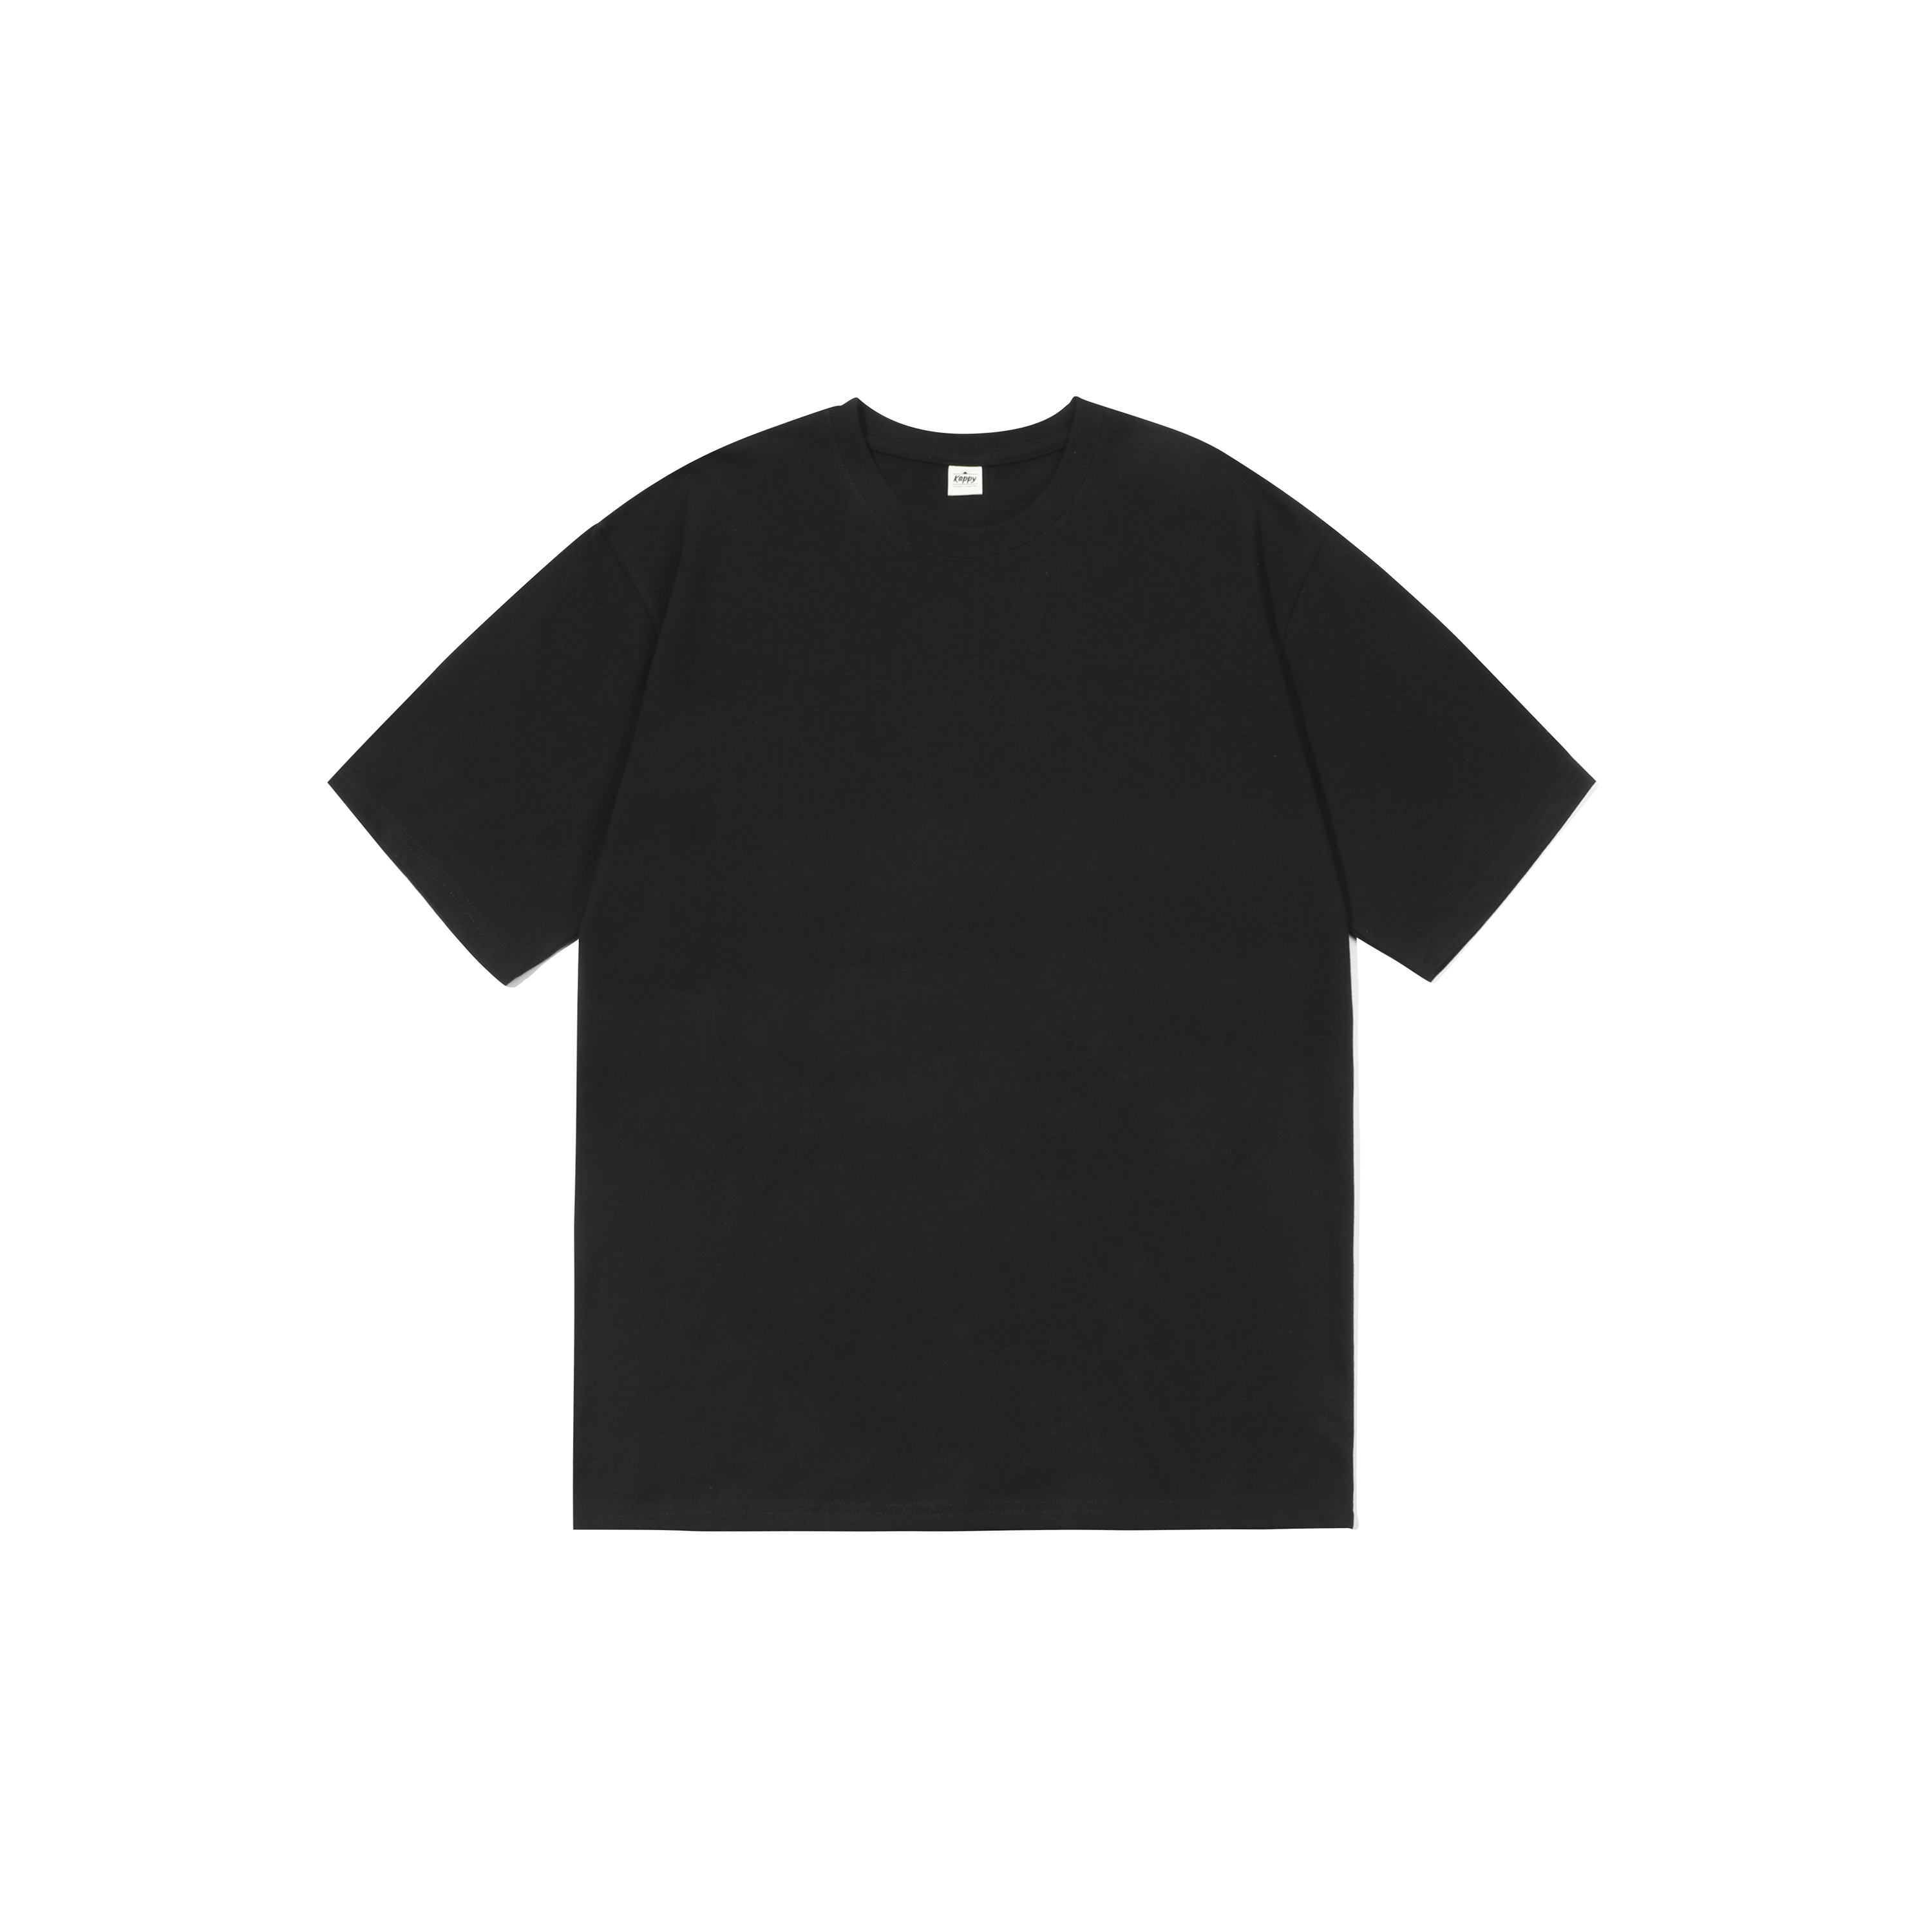 Kappy plain t-shirt black